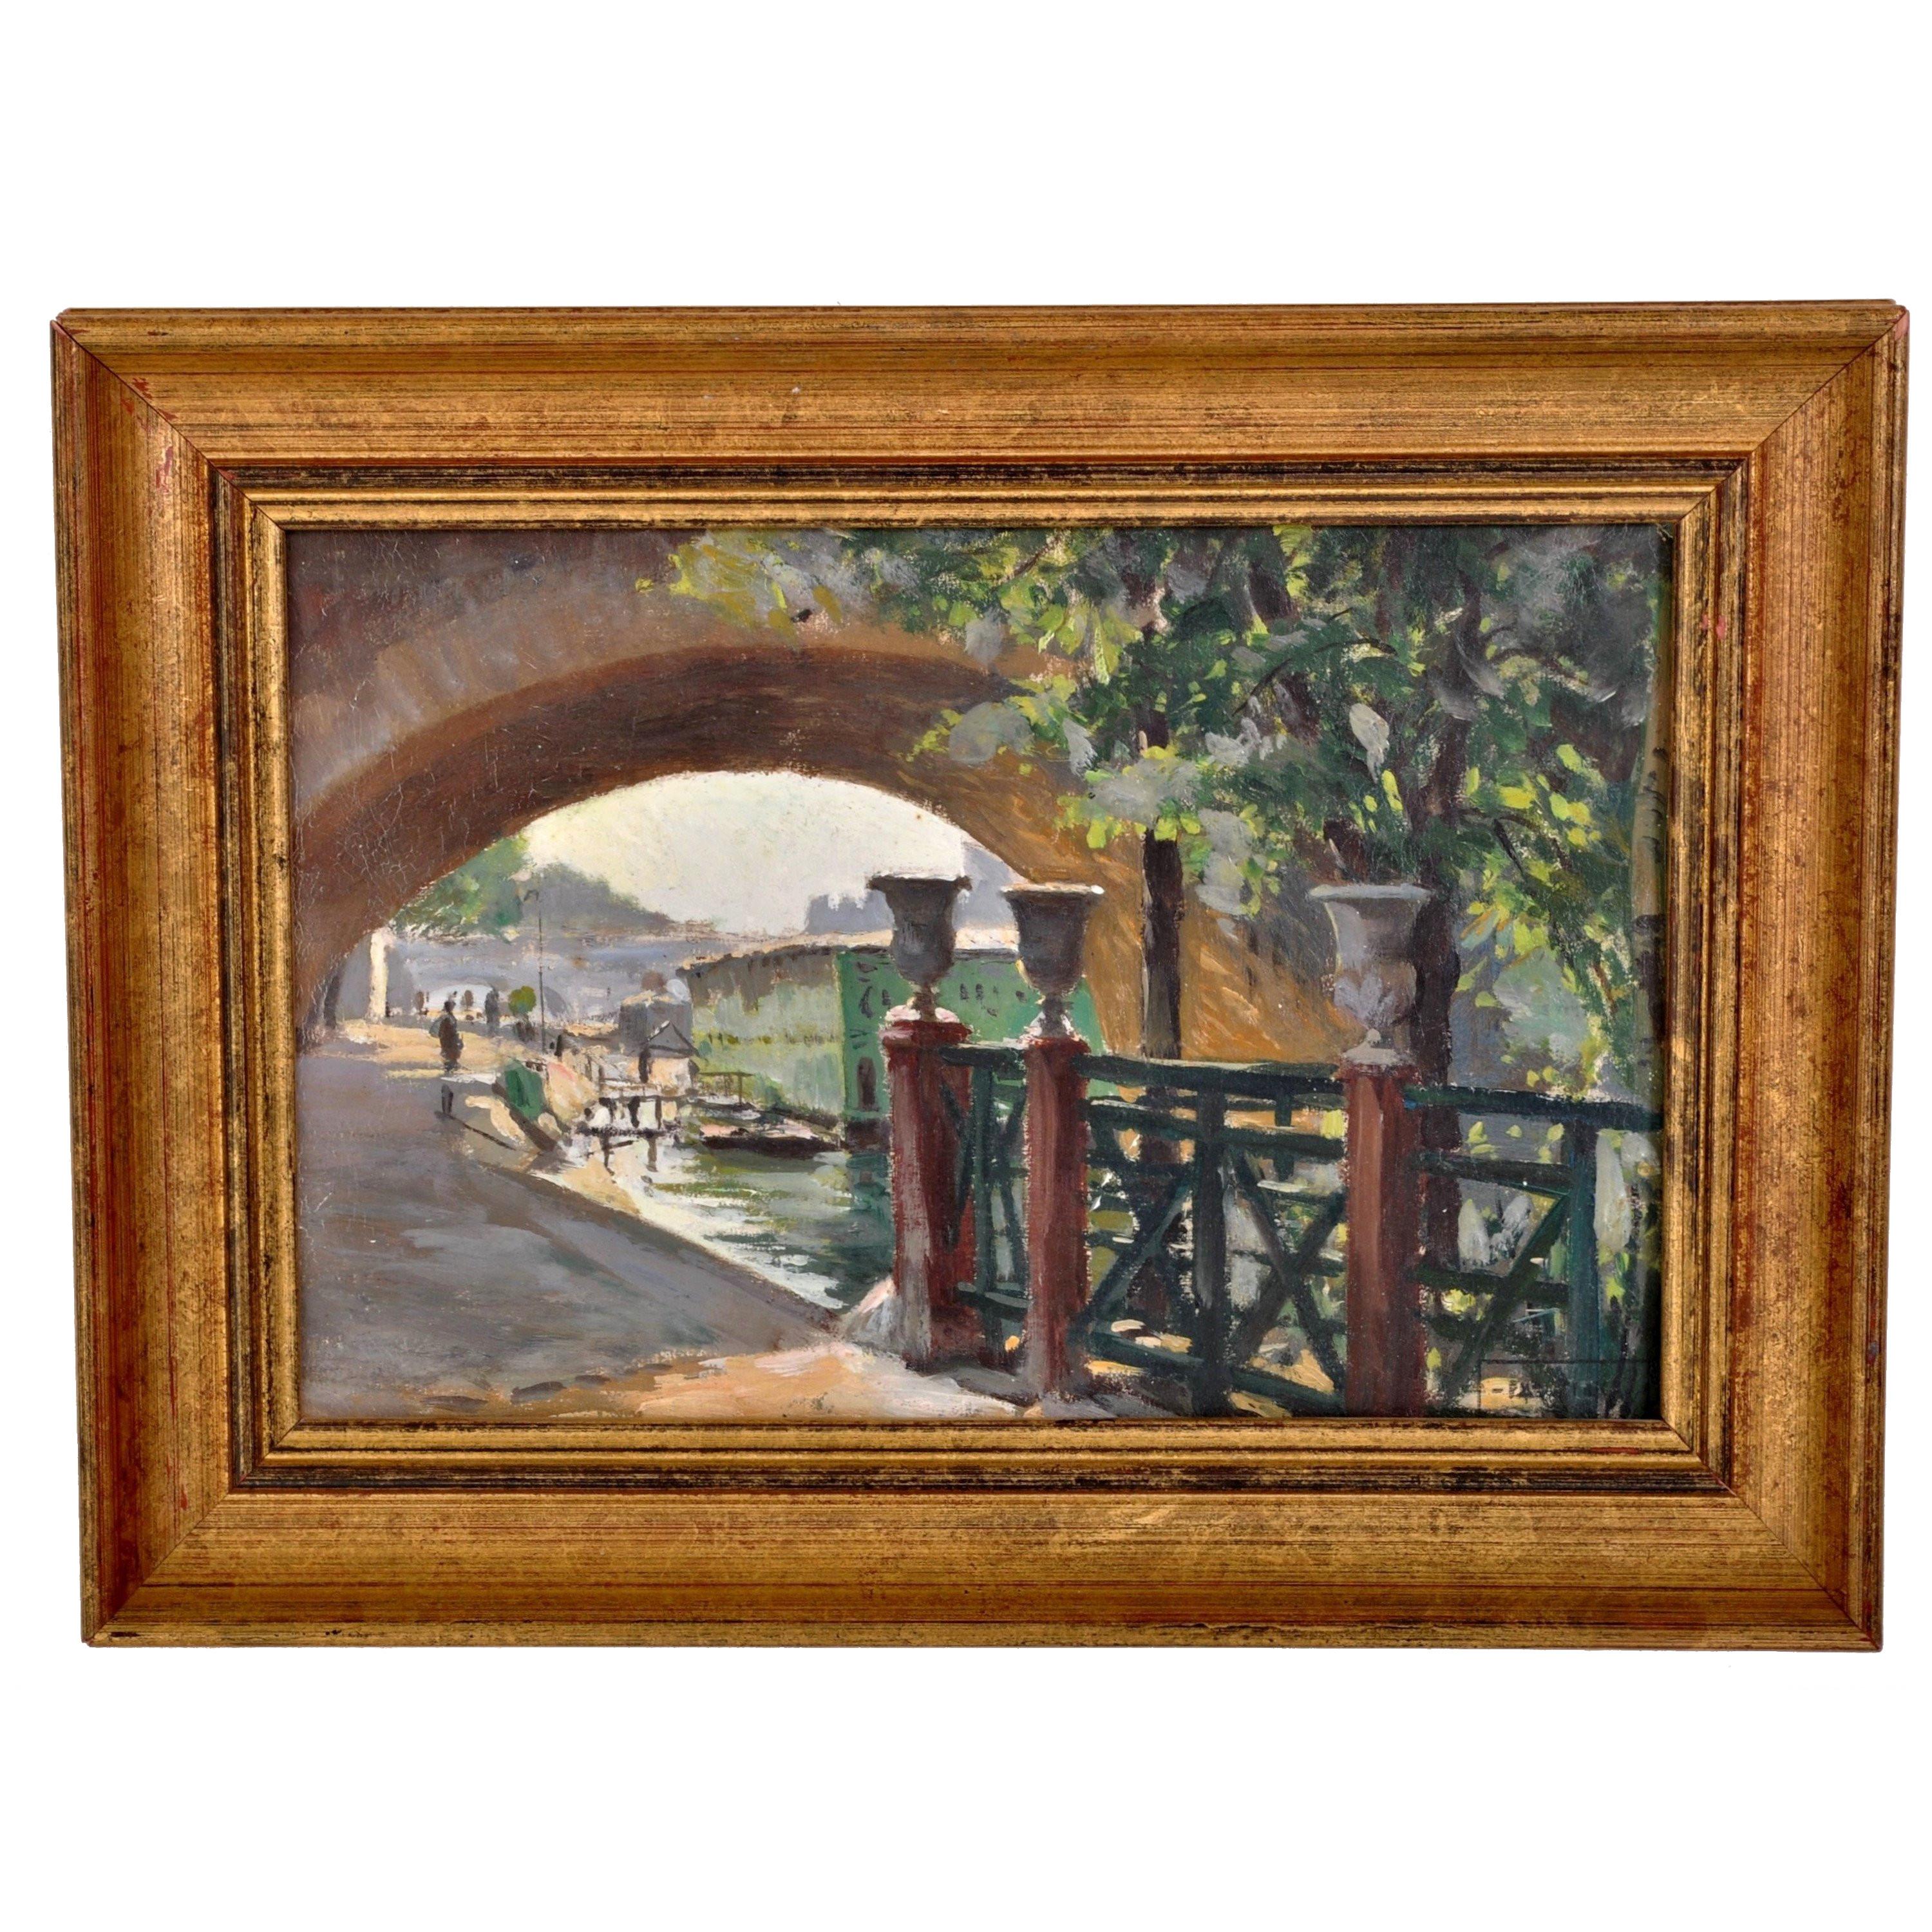 Landscape Painting PAUL DE FRICK - Peinture à l'huile impressionniste française ancienne de Paris - Scène de rivière - Paul de Frick 1900